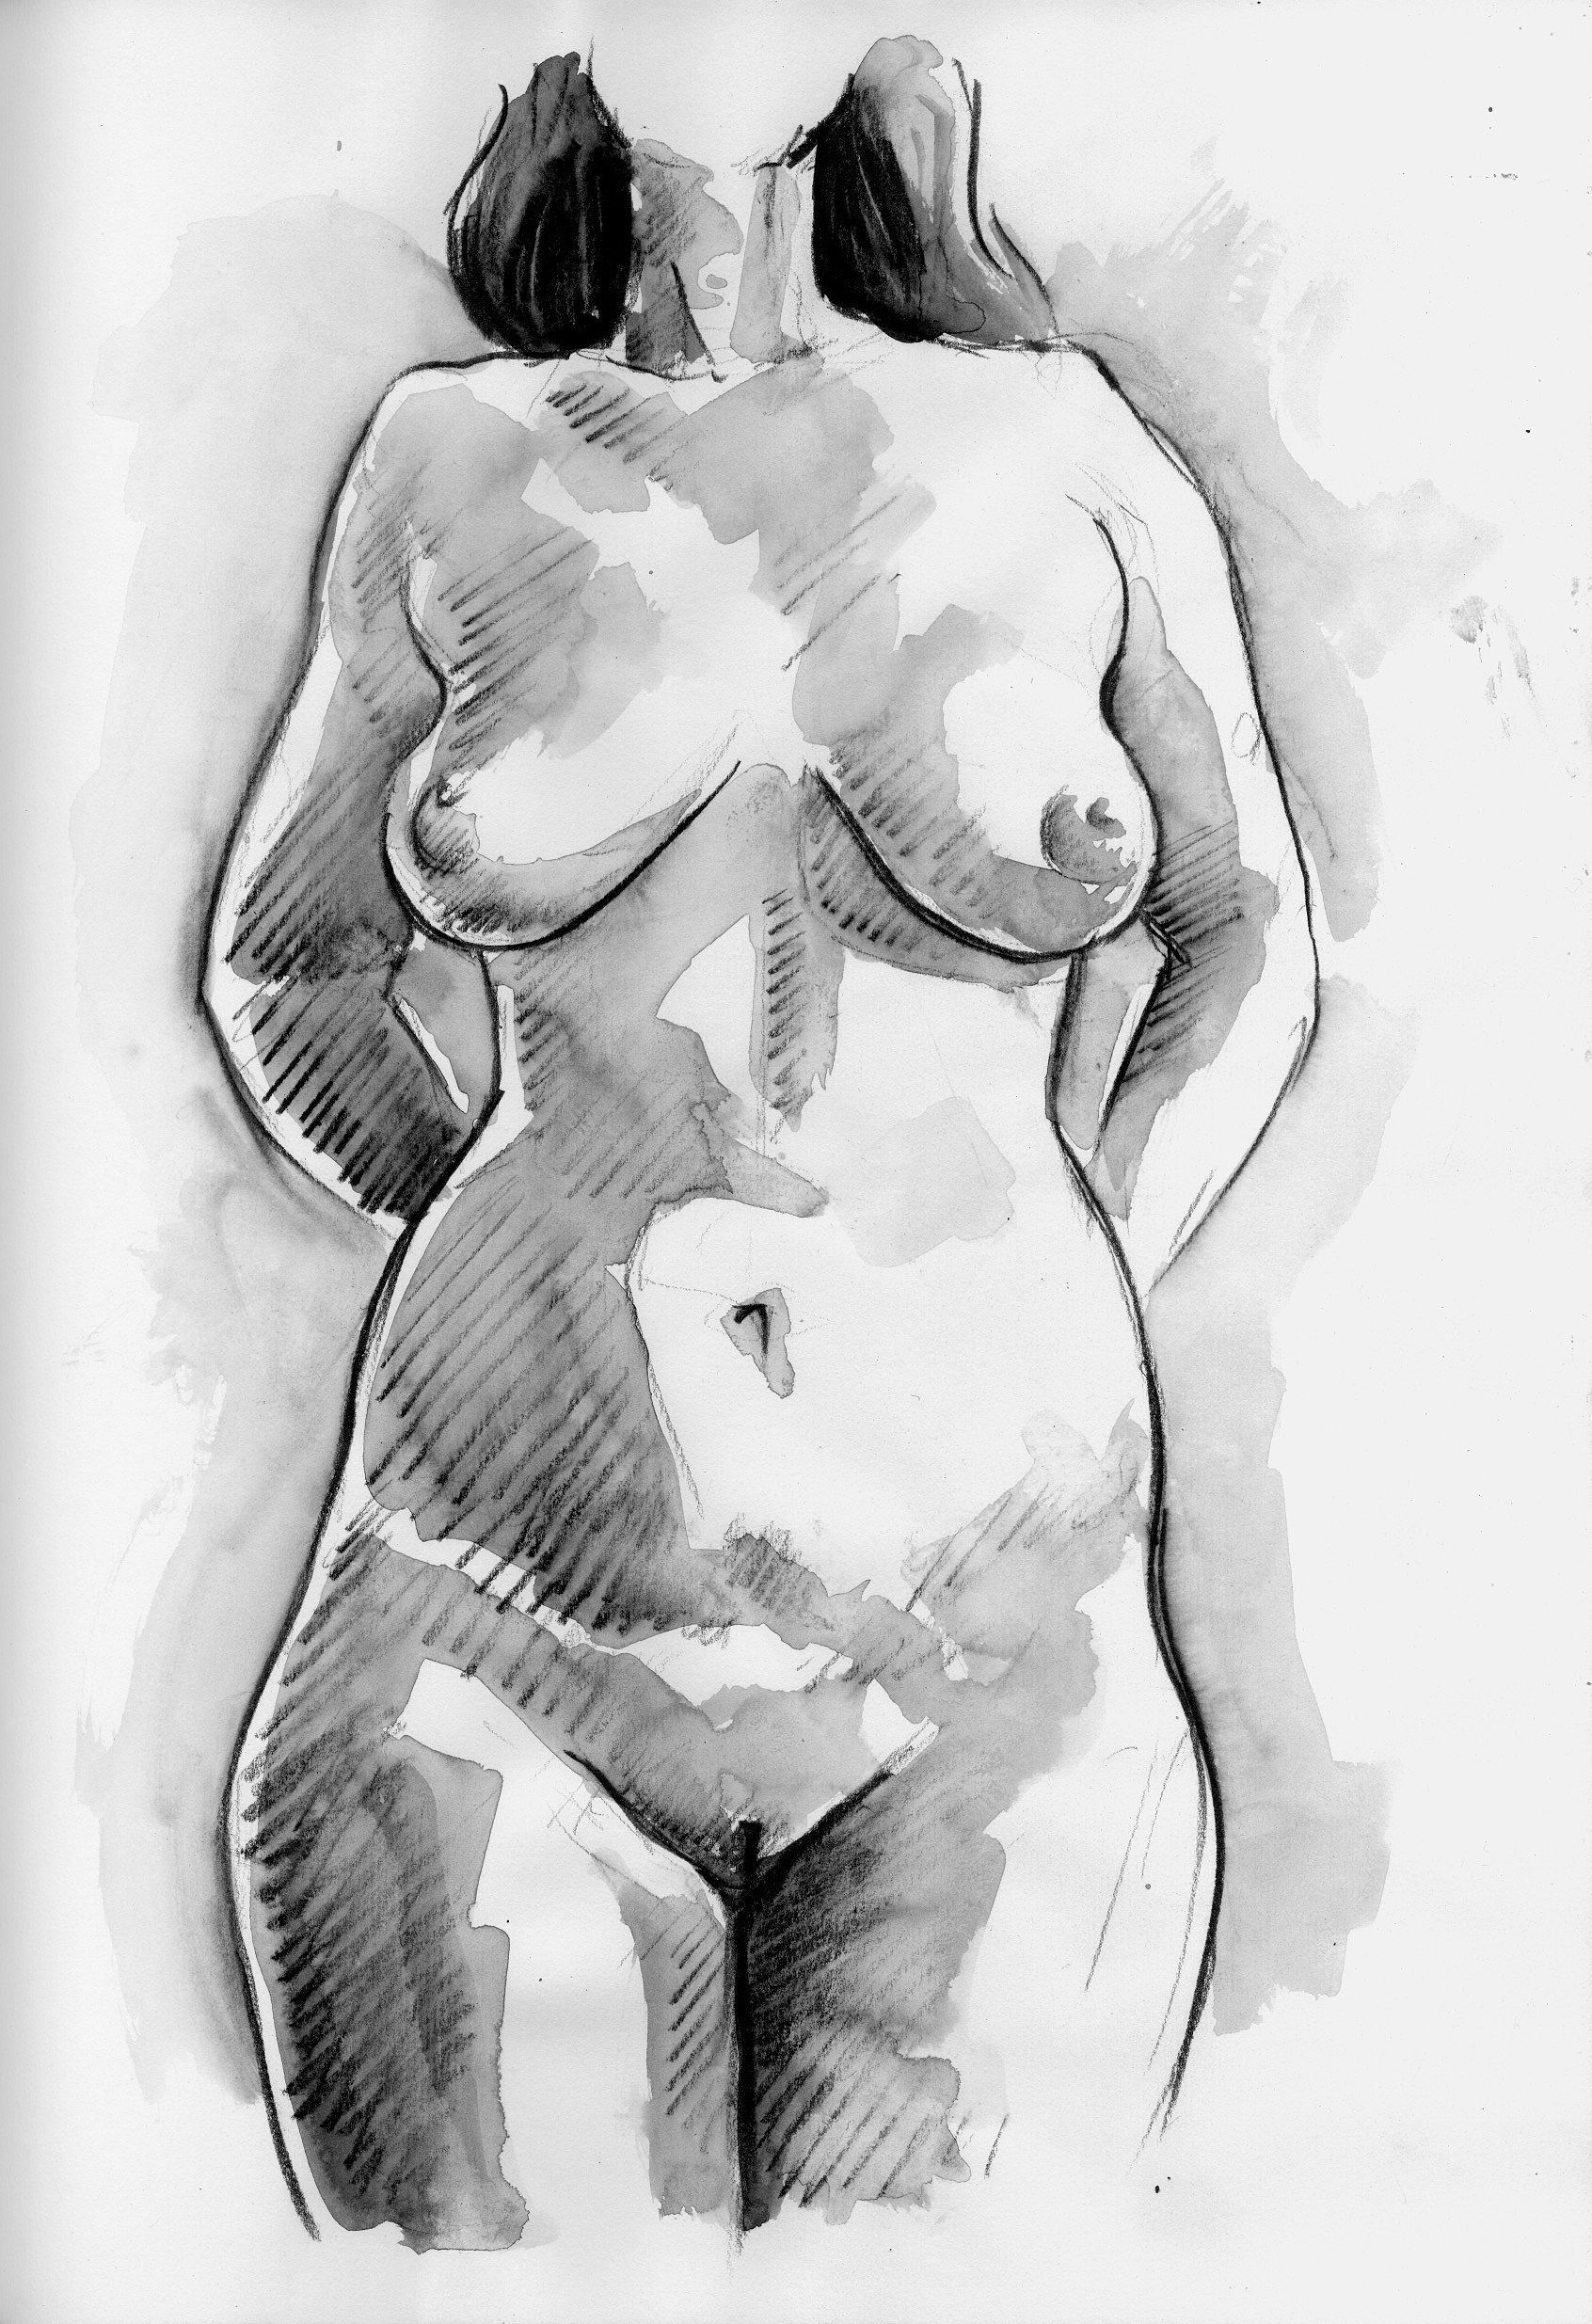 Commission a nude portrait